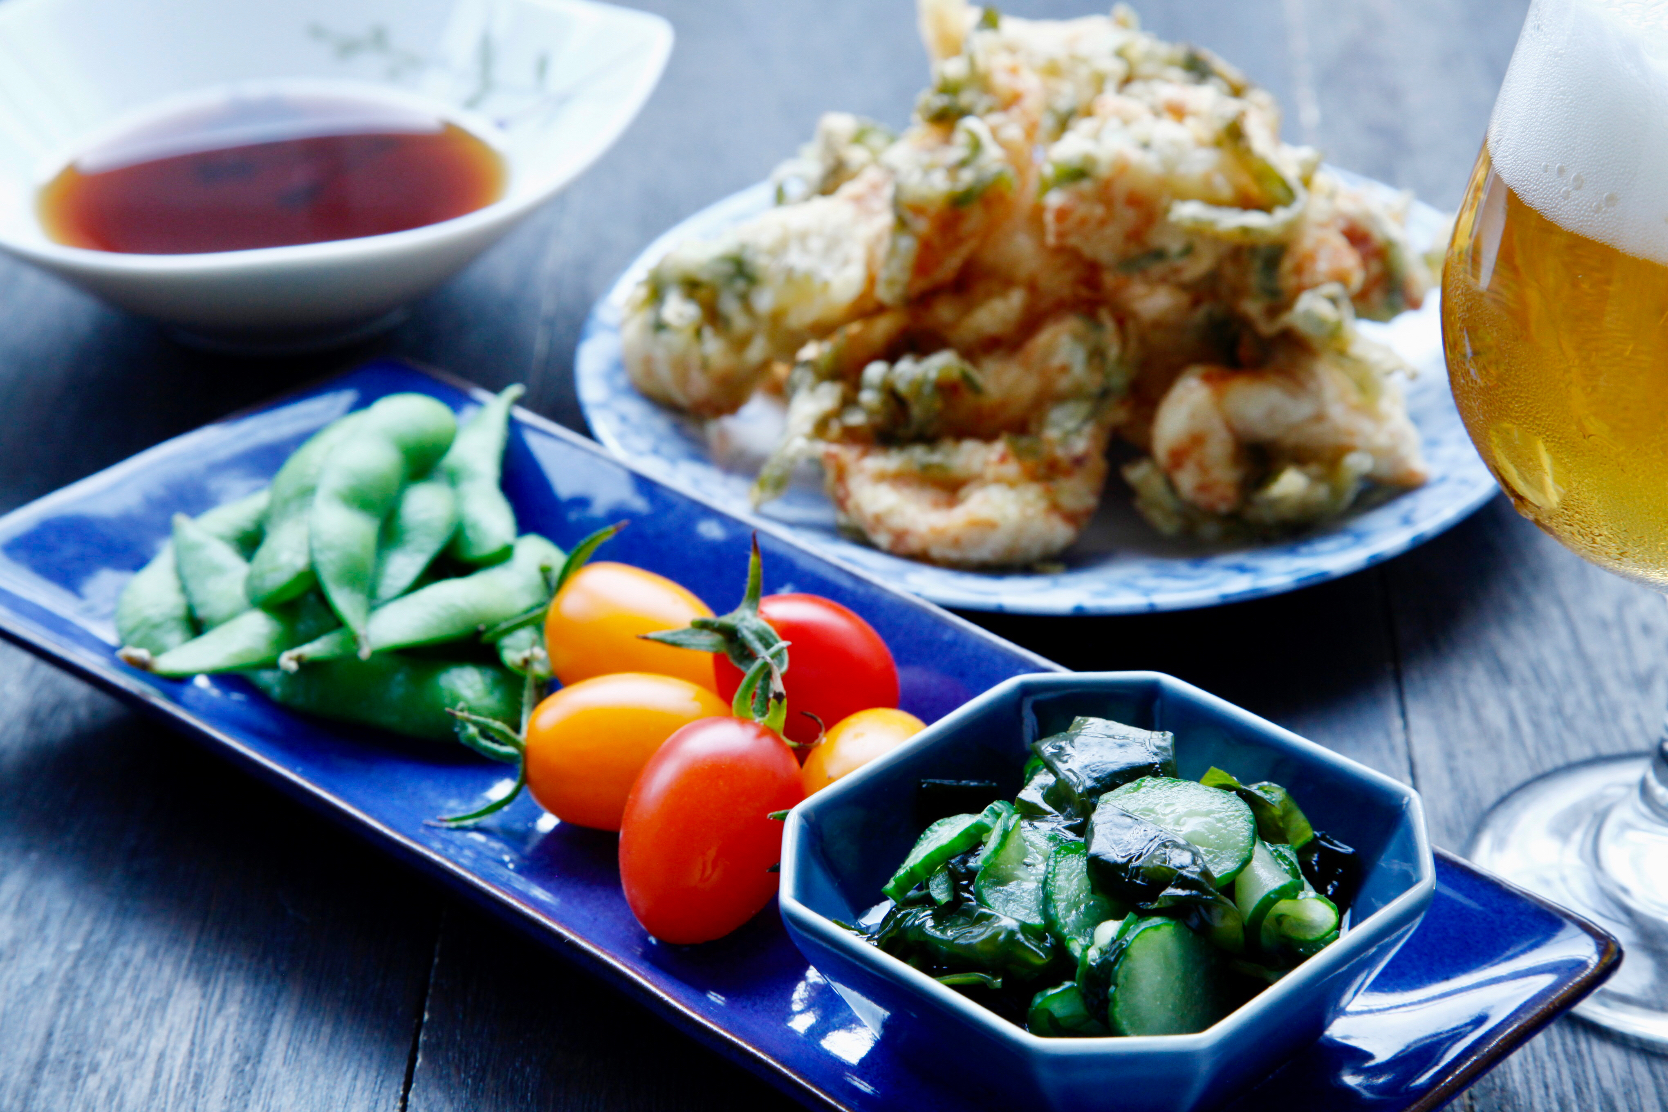 シソとり天ぷら、胡瓜とワカメの酢の物、アイコトマト、枝豆